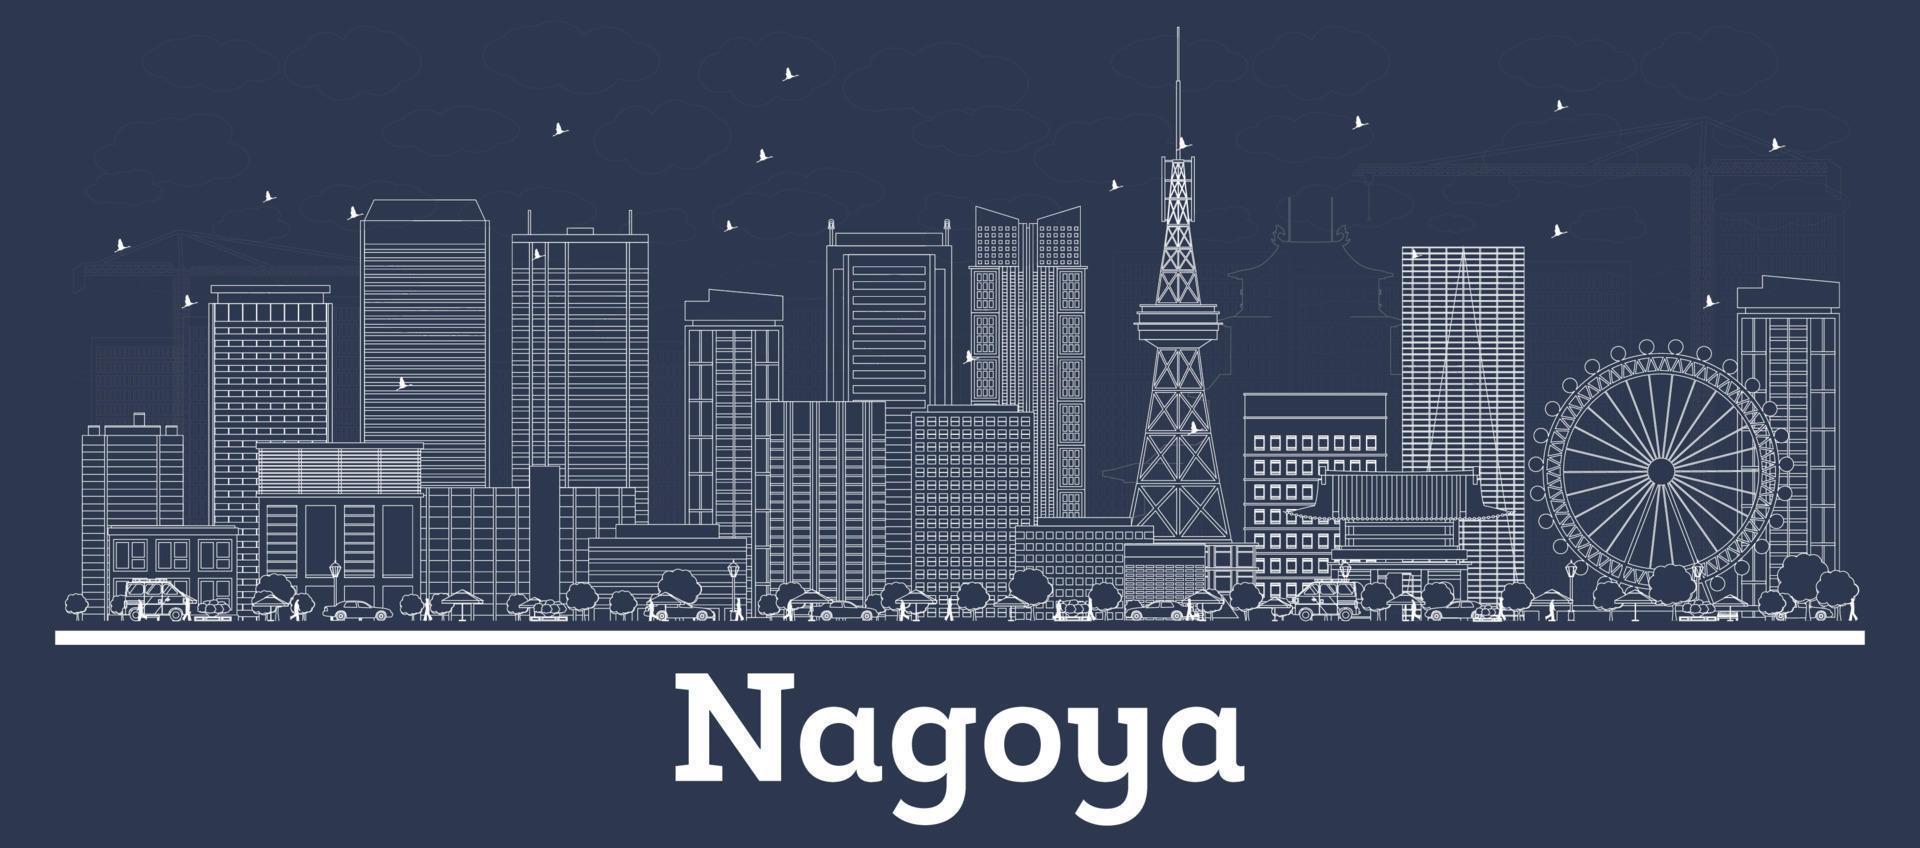 delineie o horizonte da cidade de nagoya japão com edifícios brancos. vetor